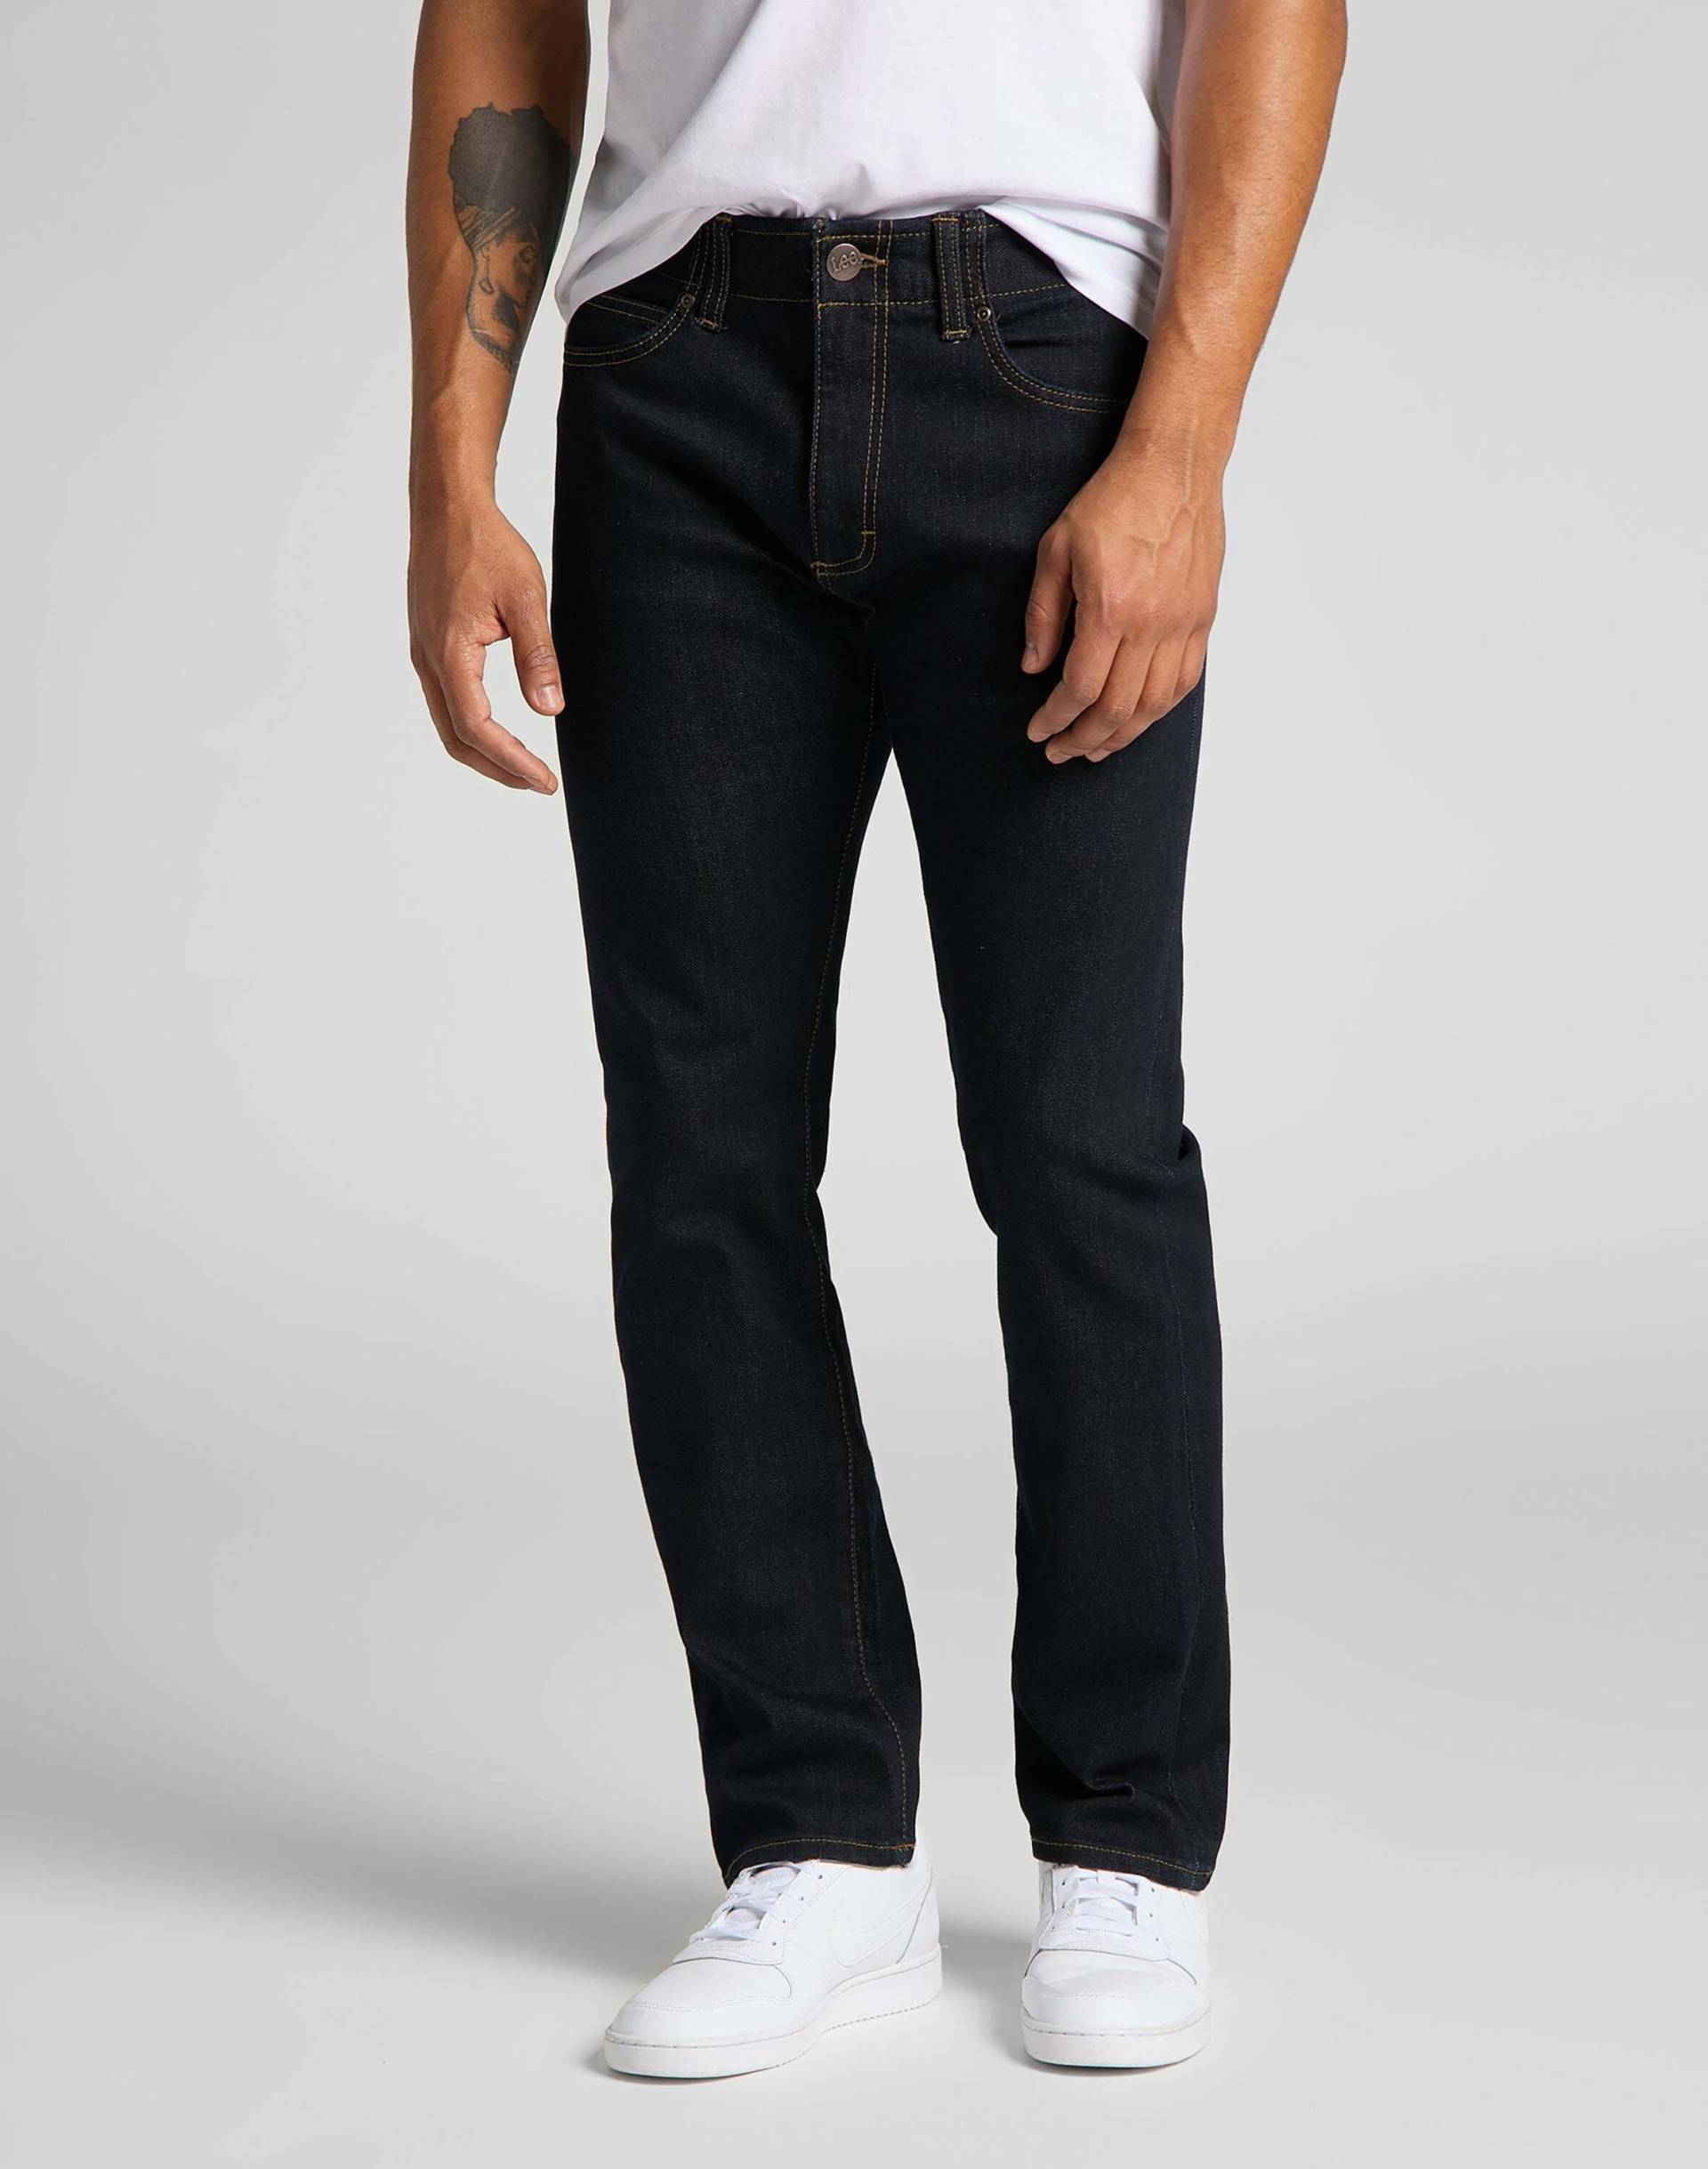 Jeans Slim Fit Mvp Herren Blau L30/W29 von Lee